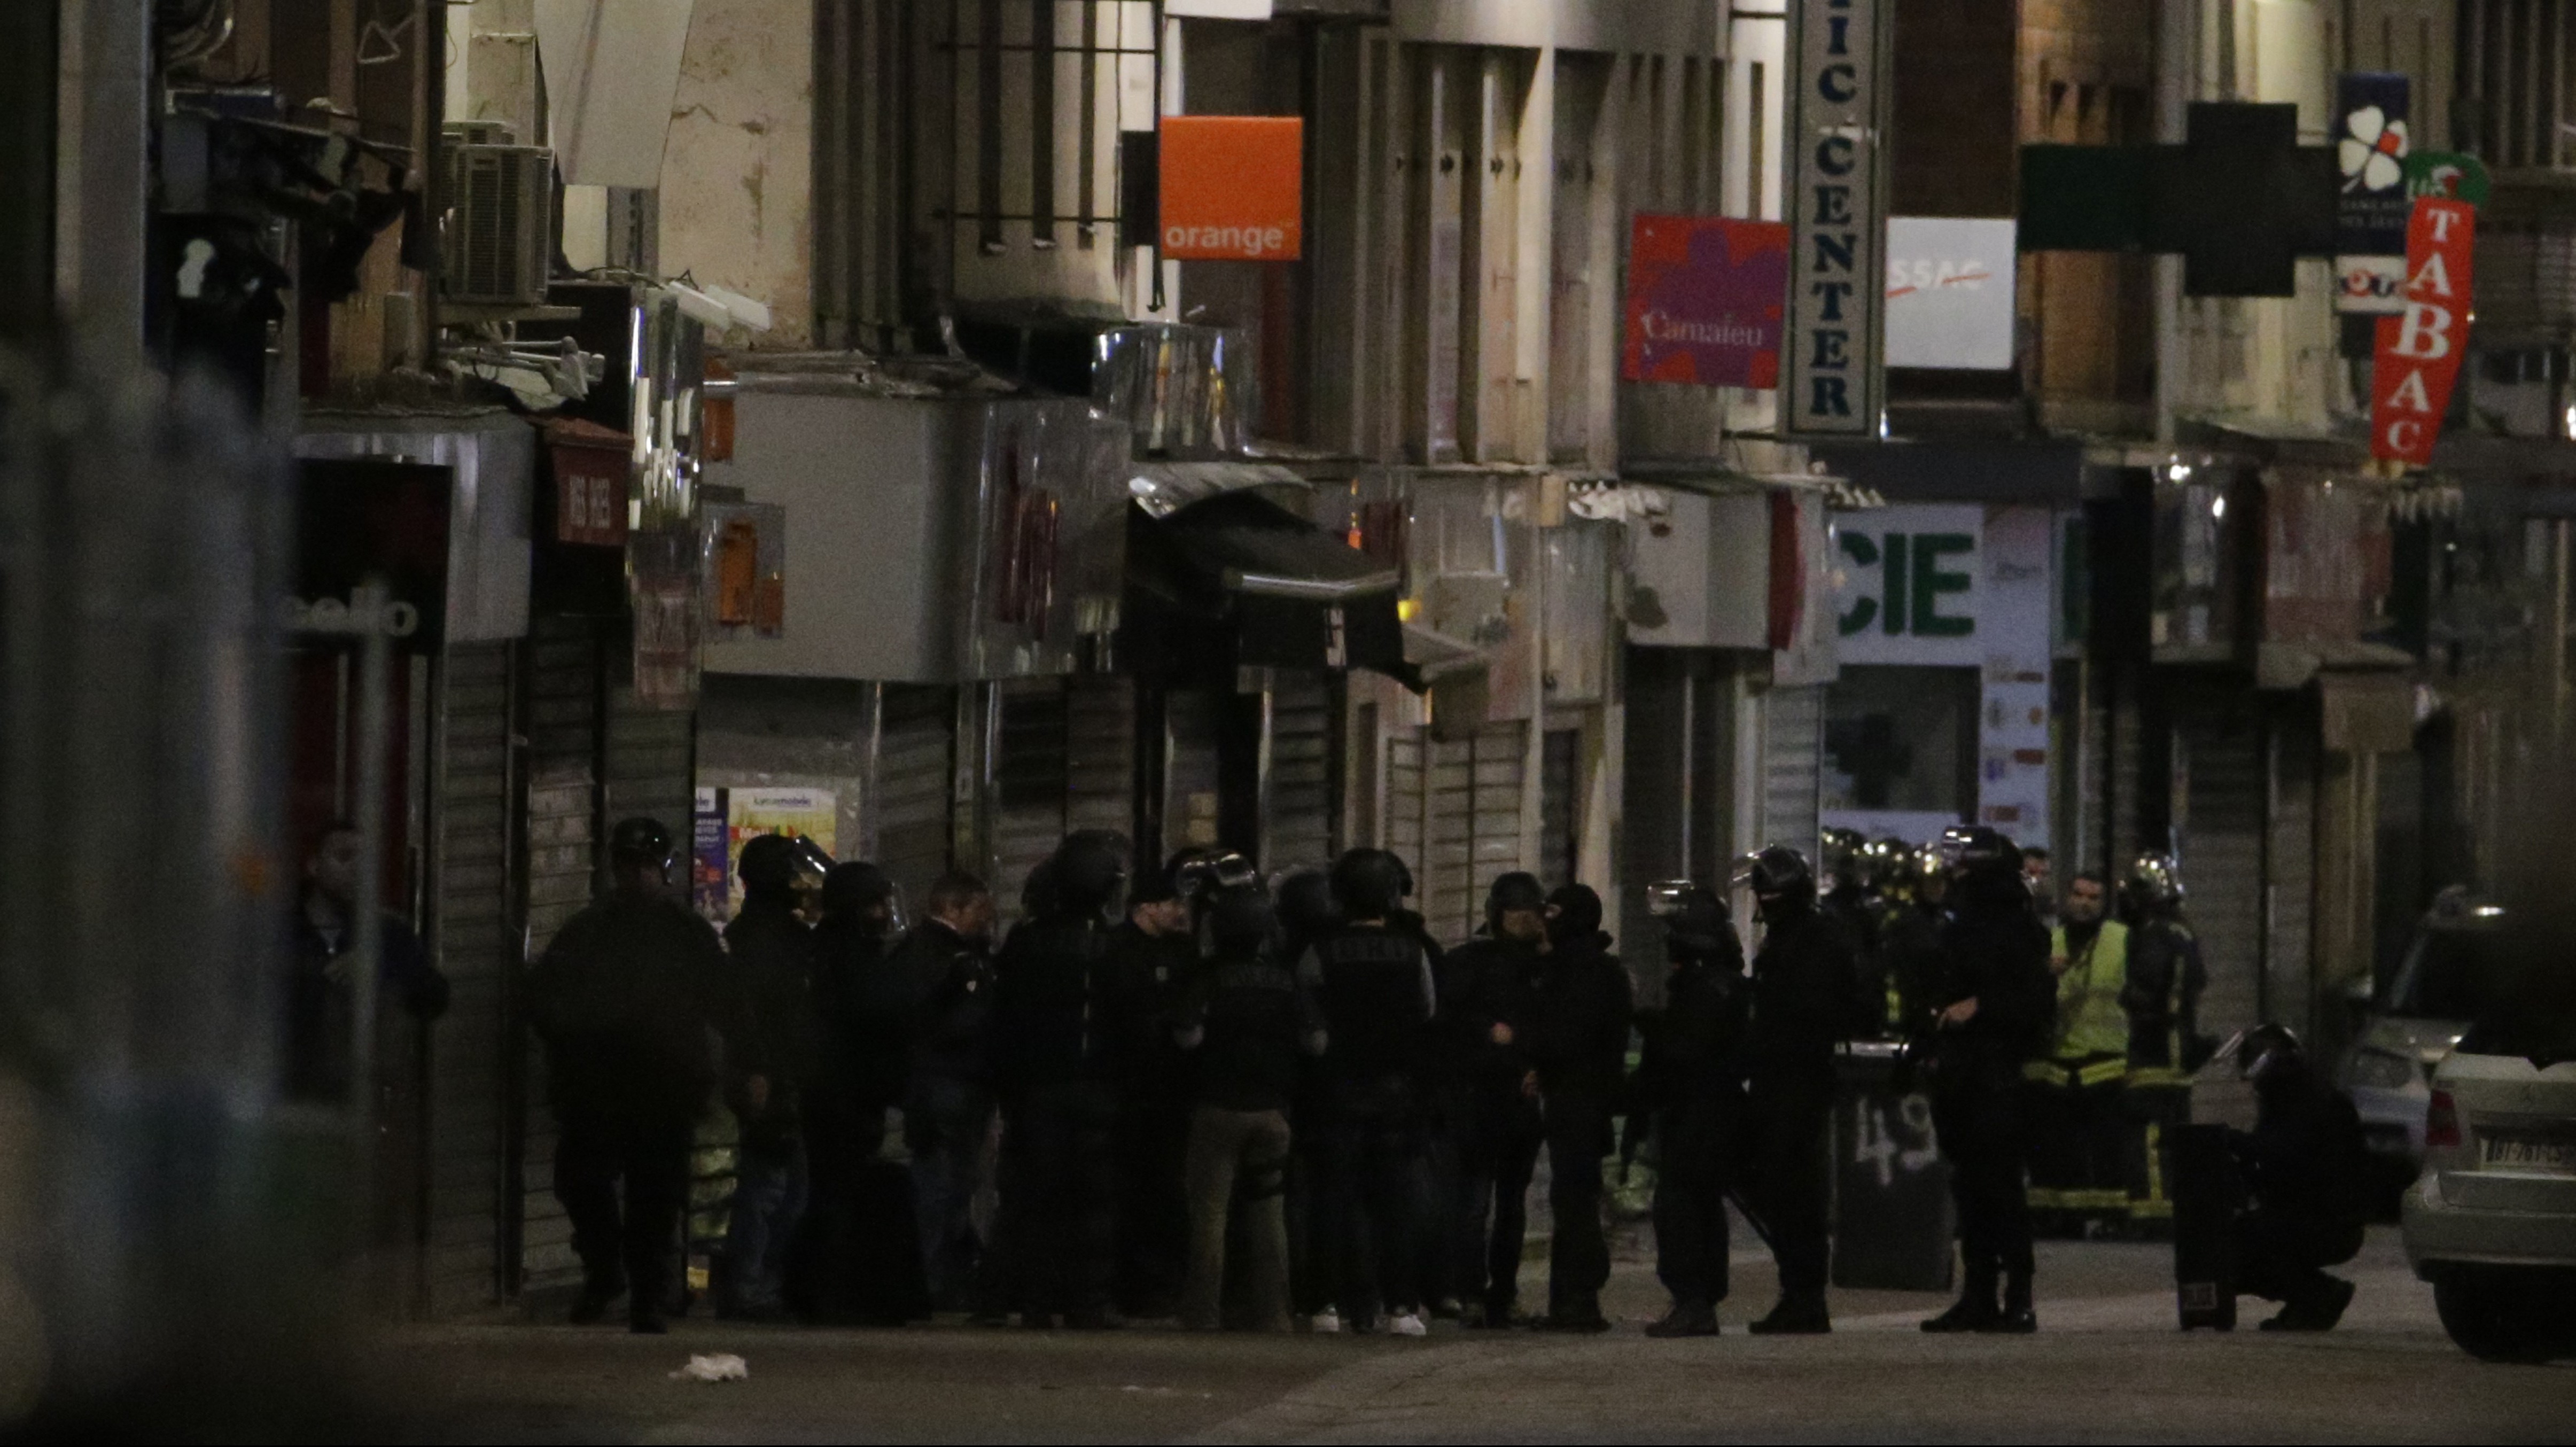 Saint-Denis police raid